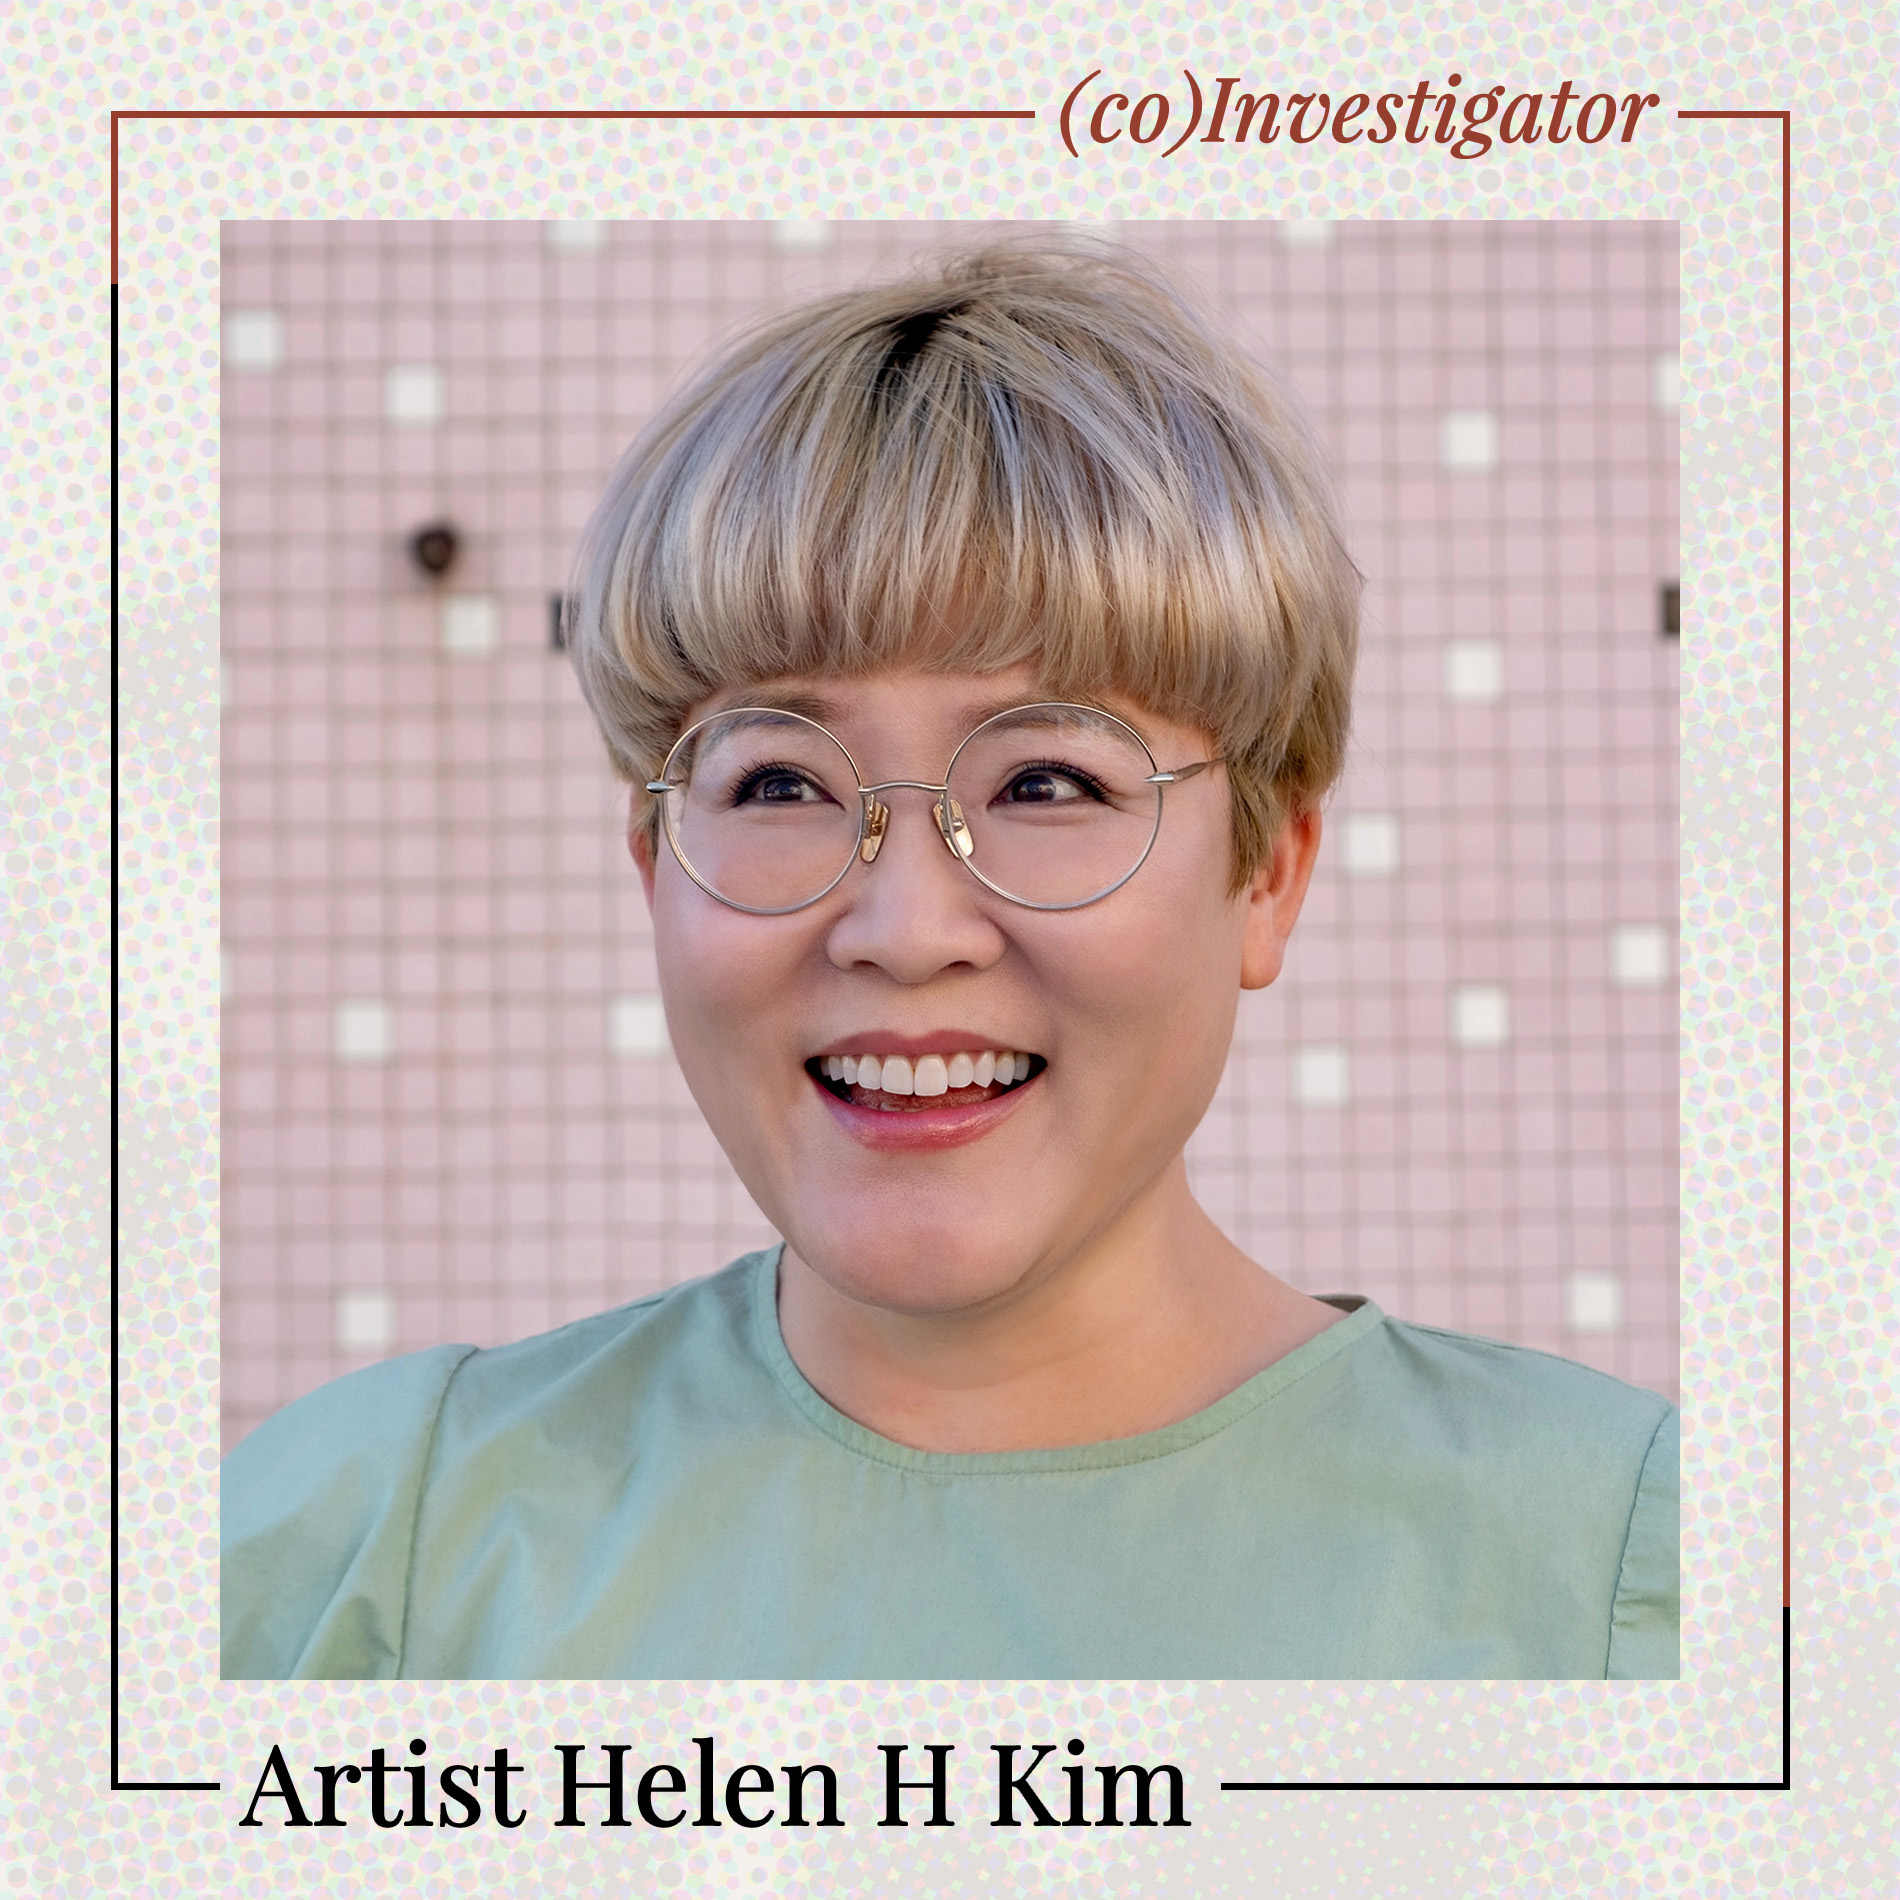 Helen H. Kim